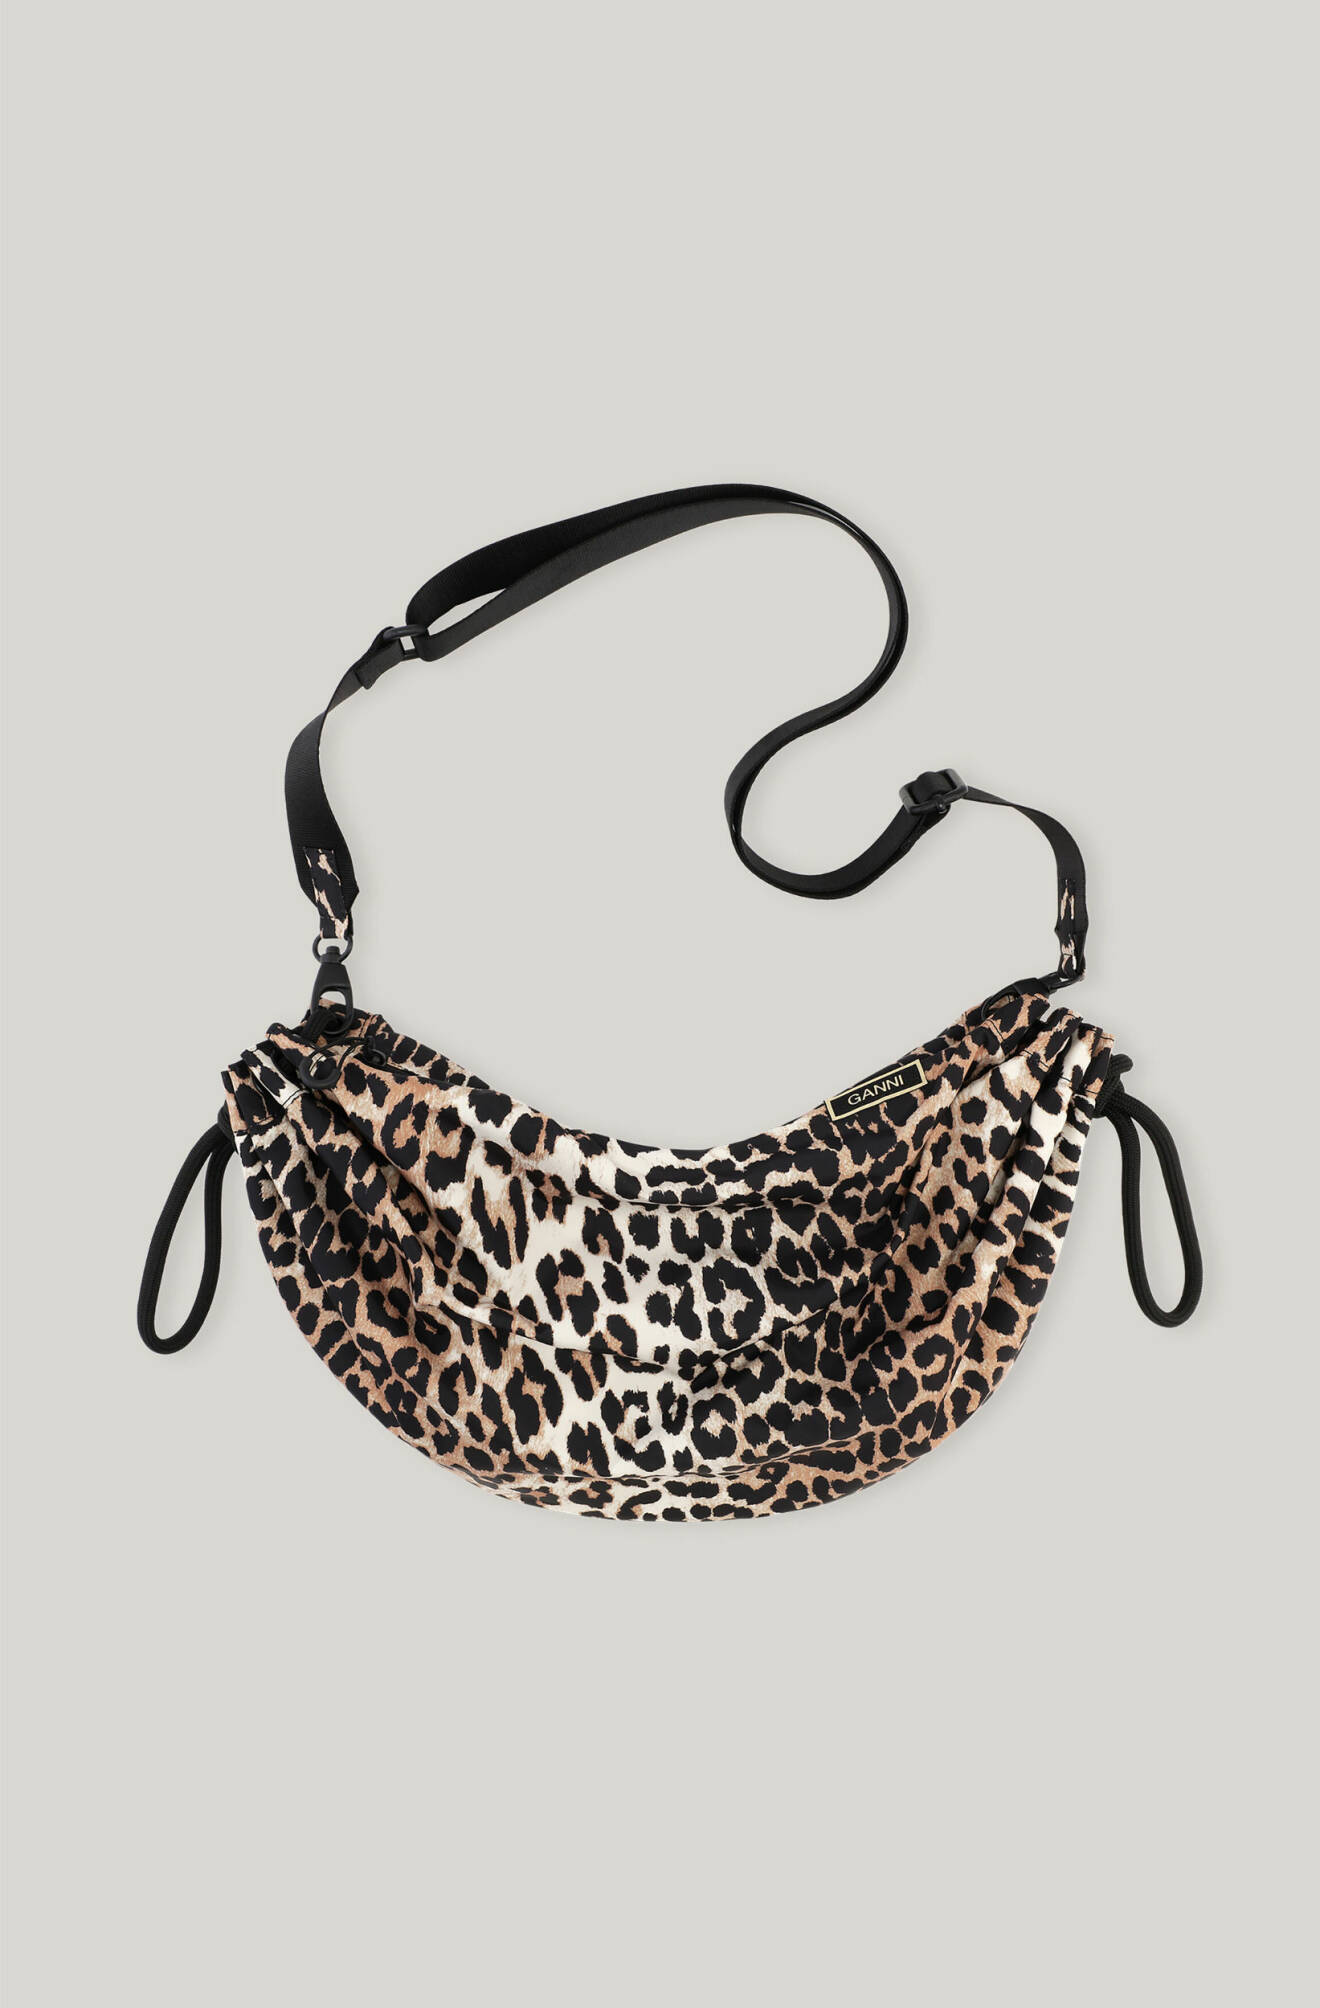 Leopardmönstrad väska formad som en båge med avtagbar, svart axelrem. Väska från Ganni.